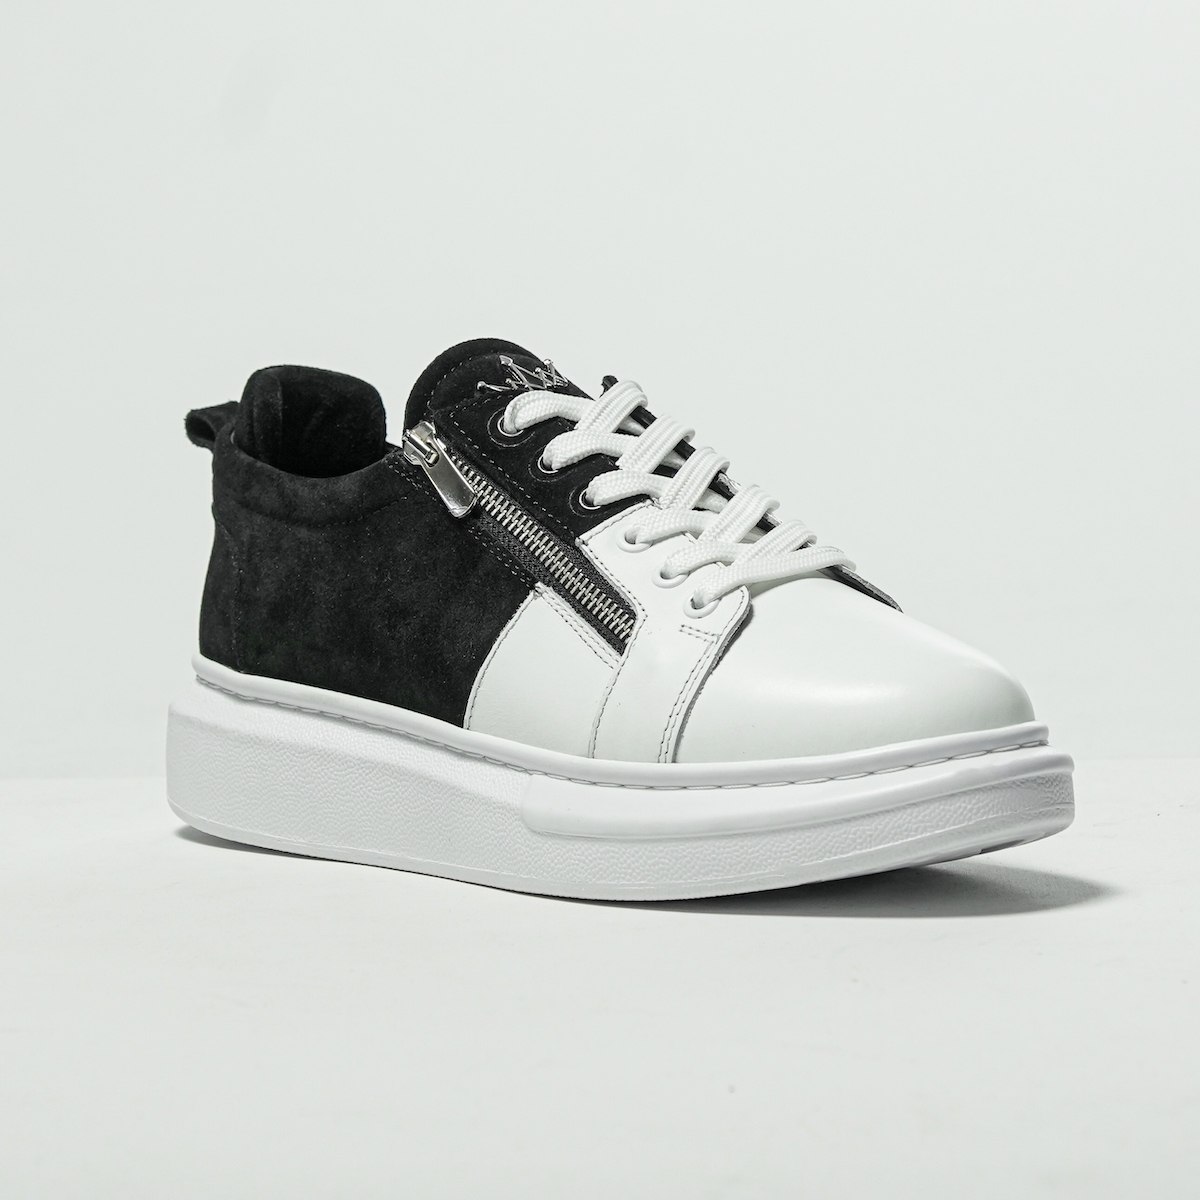 Zapatillas de Diseñador de Cuero Premium con Cremalleras Plateadas Blanco y Negro | Martin Valen